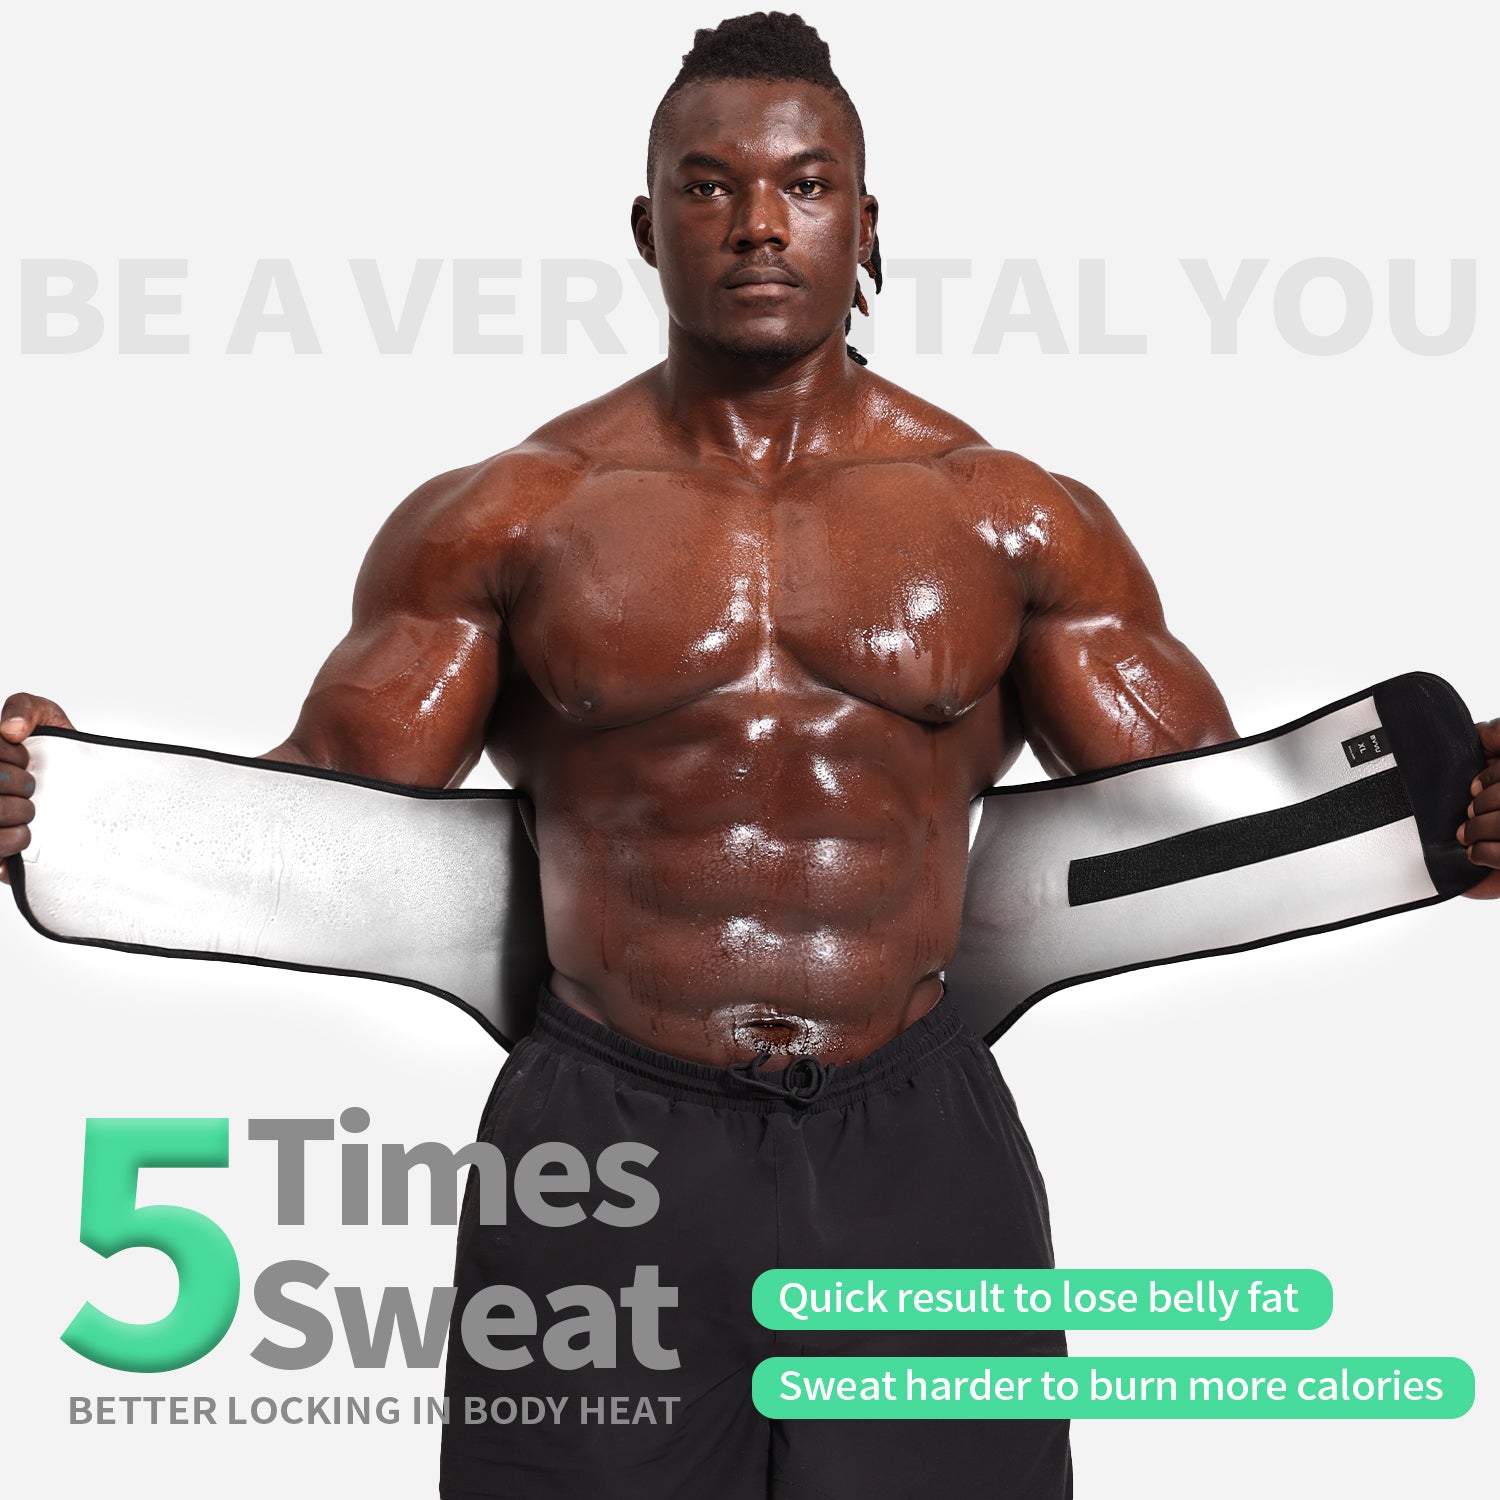 Fovbun Waist Trainer for Women & Men, Sweat Belt for Belly/Back